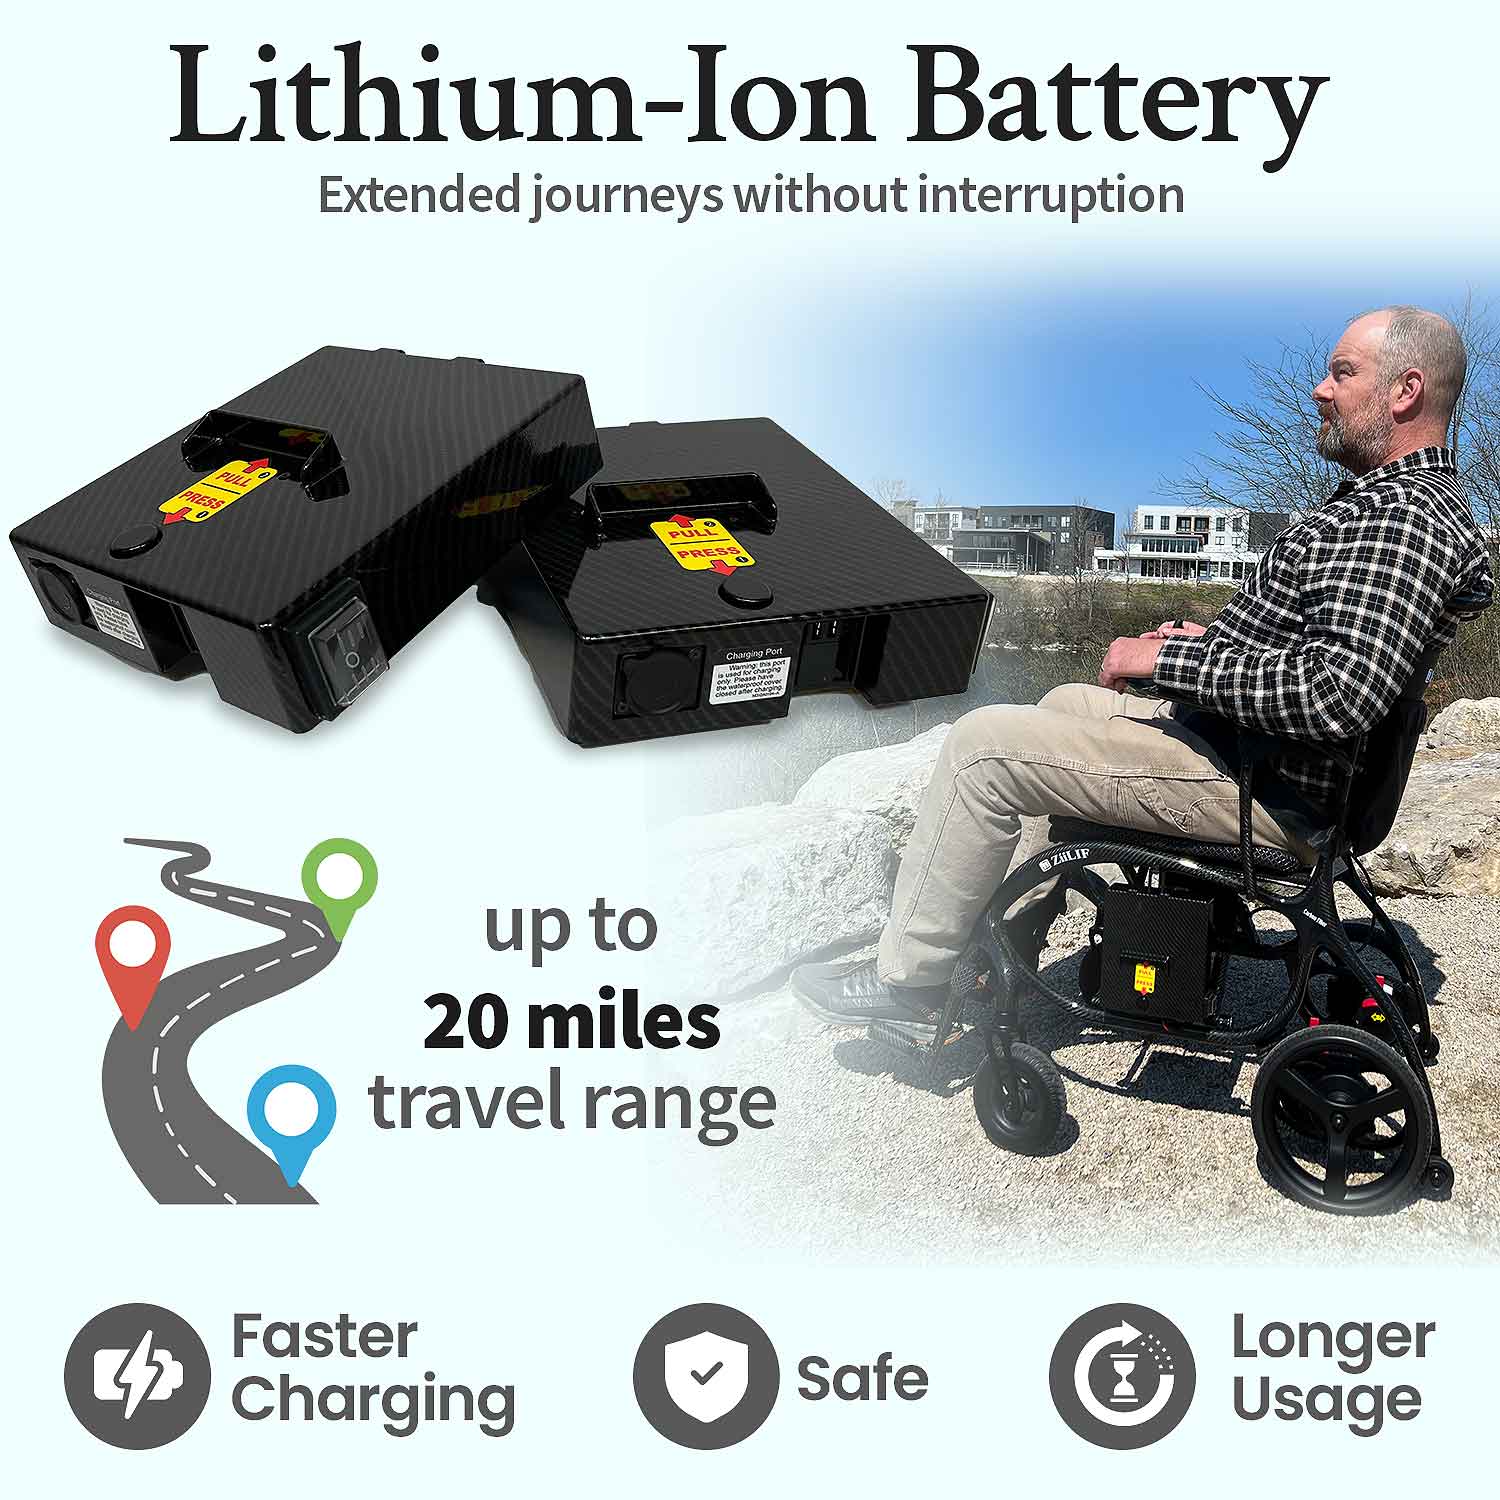 ZiiLIF X Model Carbon Fiber 28lbs Lightweight Electric Wheelchair